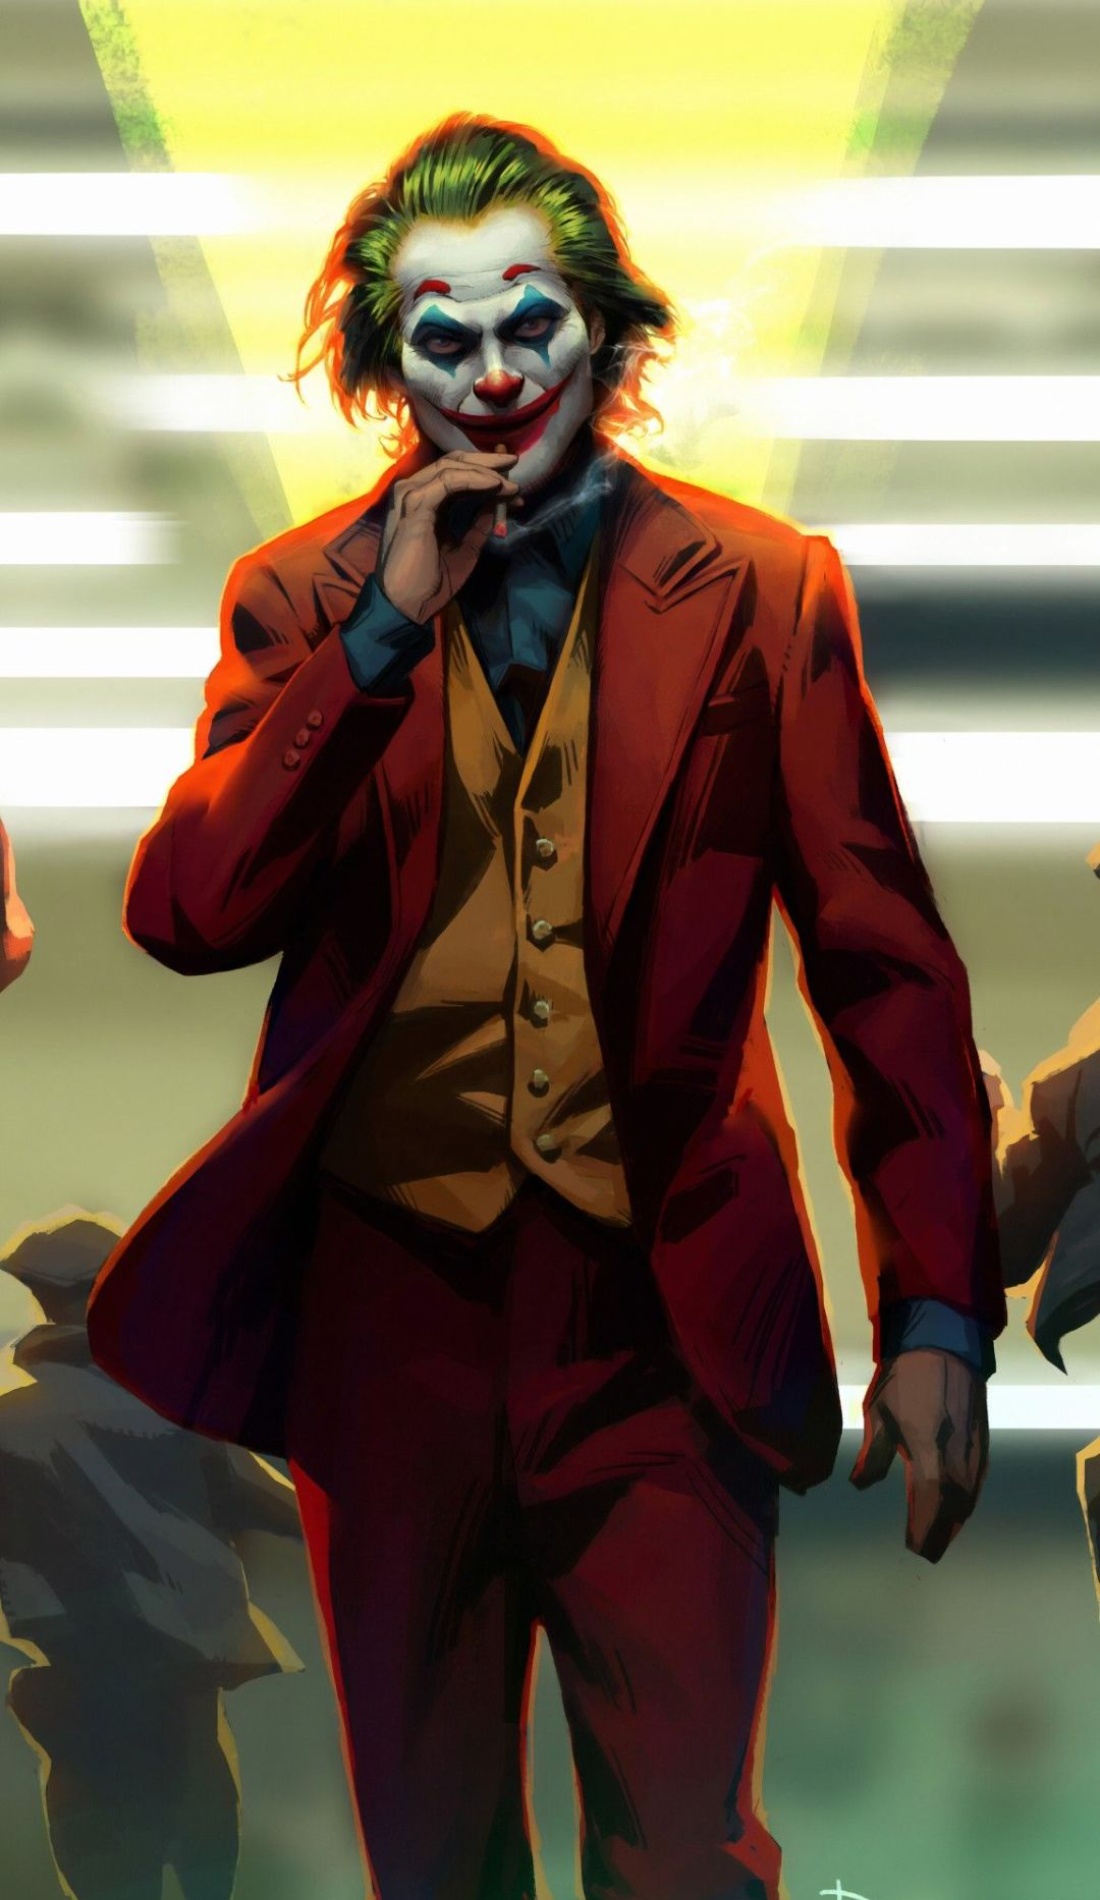 Joker Attitude Wallpaper Smoking walking